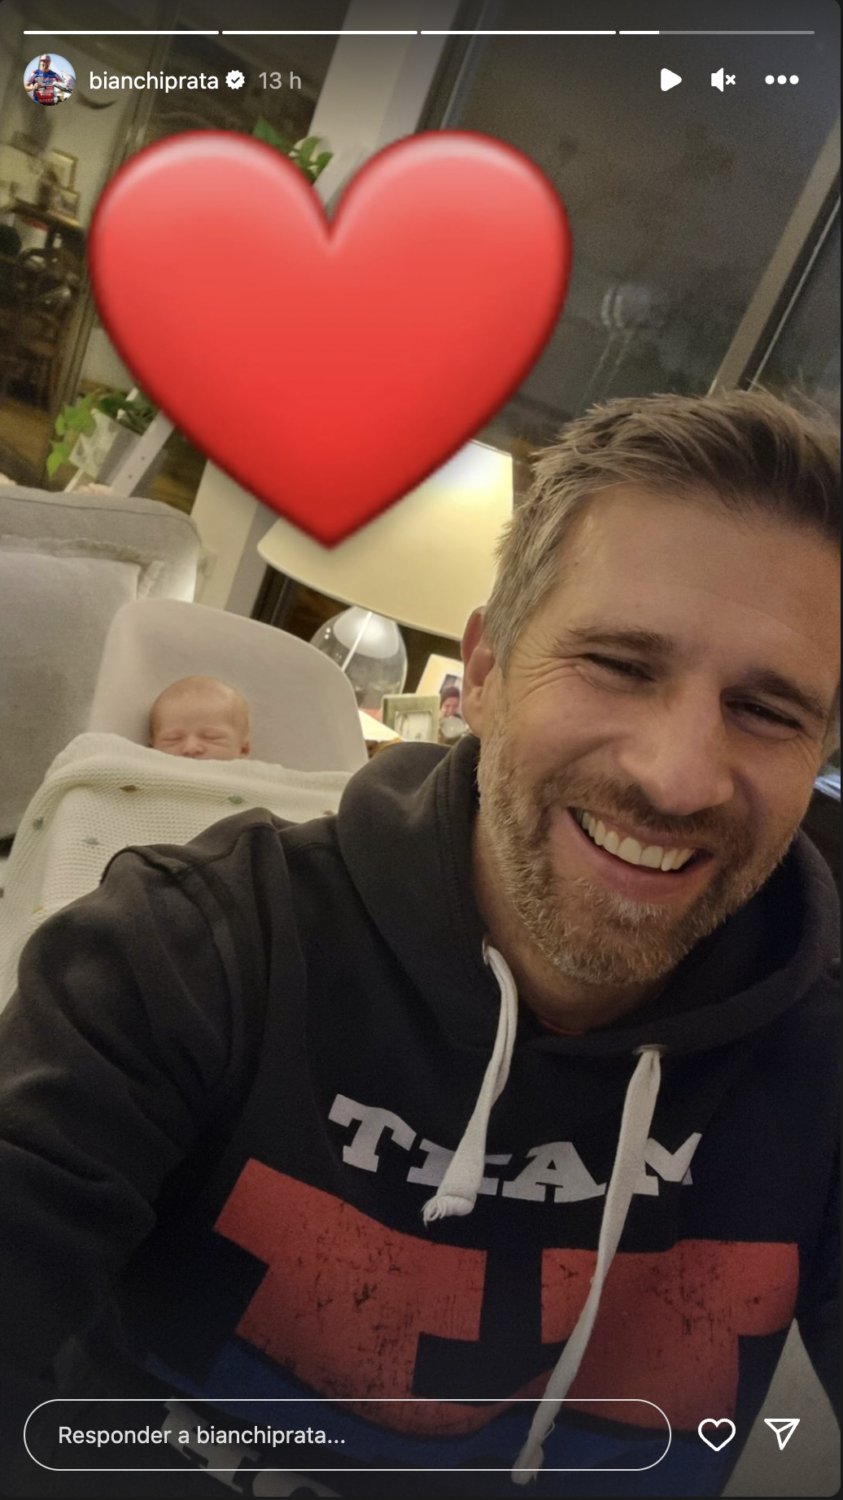 Pai babado! Pedro Bianchi Prata revela &#8216;selfie&#8217; com o bebé Vicente